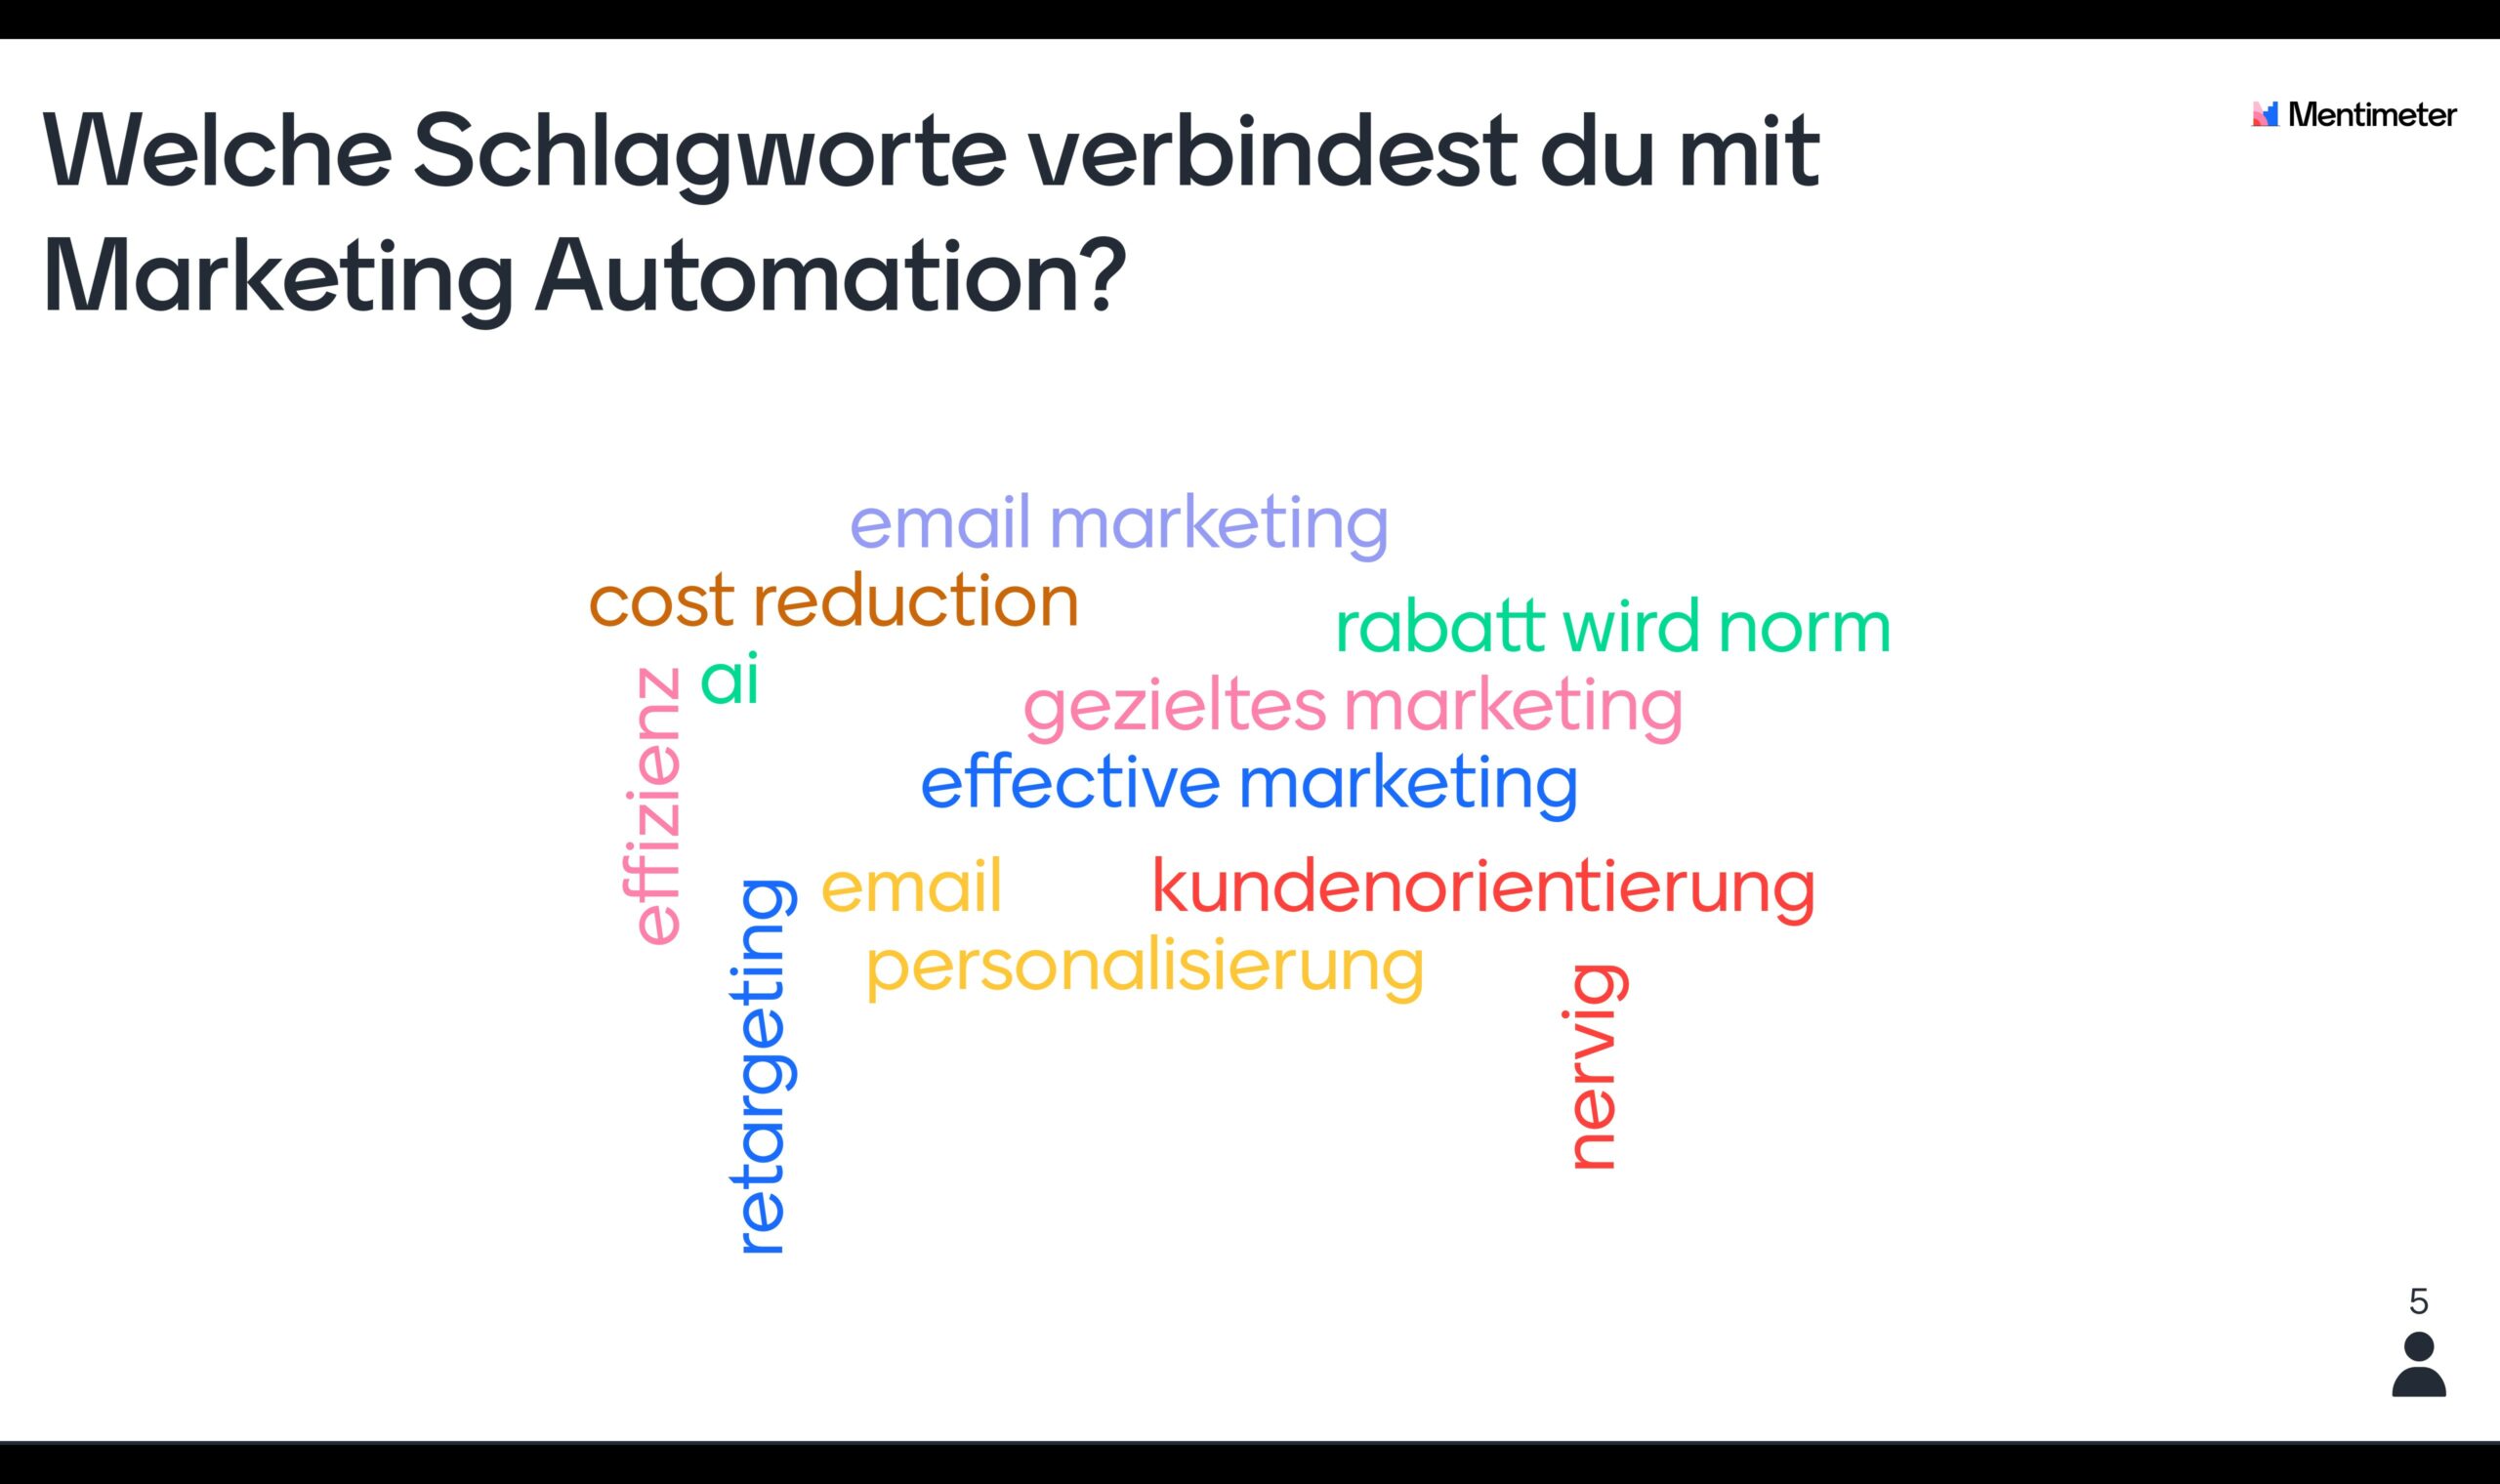 Welche Schlagworte verbindest du mit Marketing Automation?